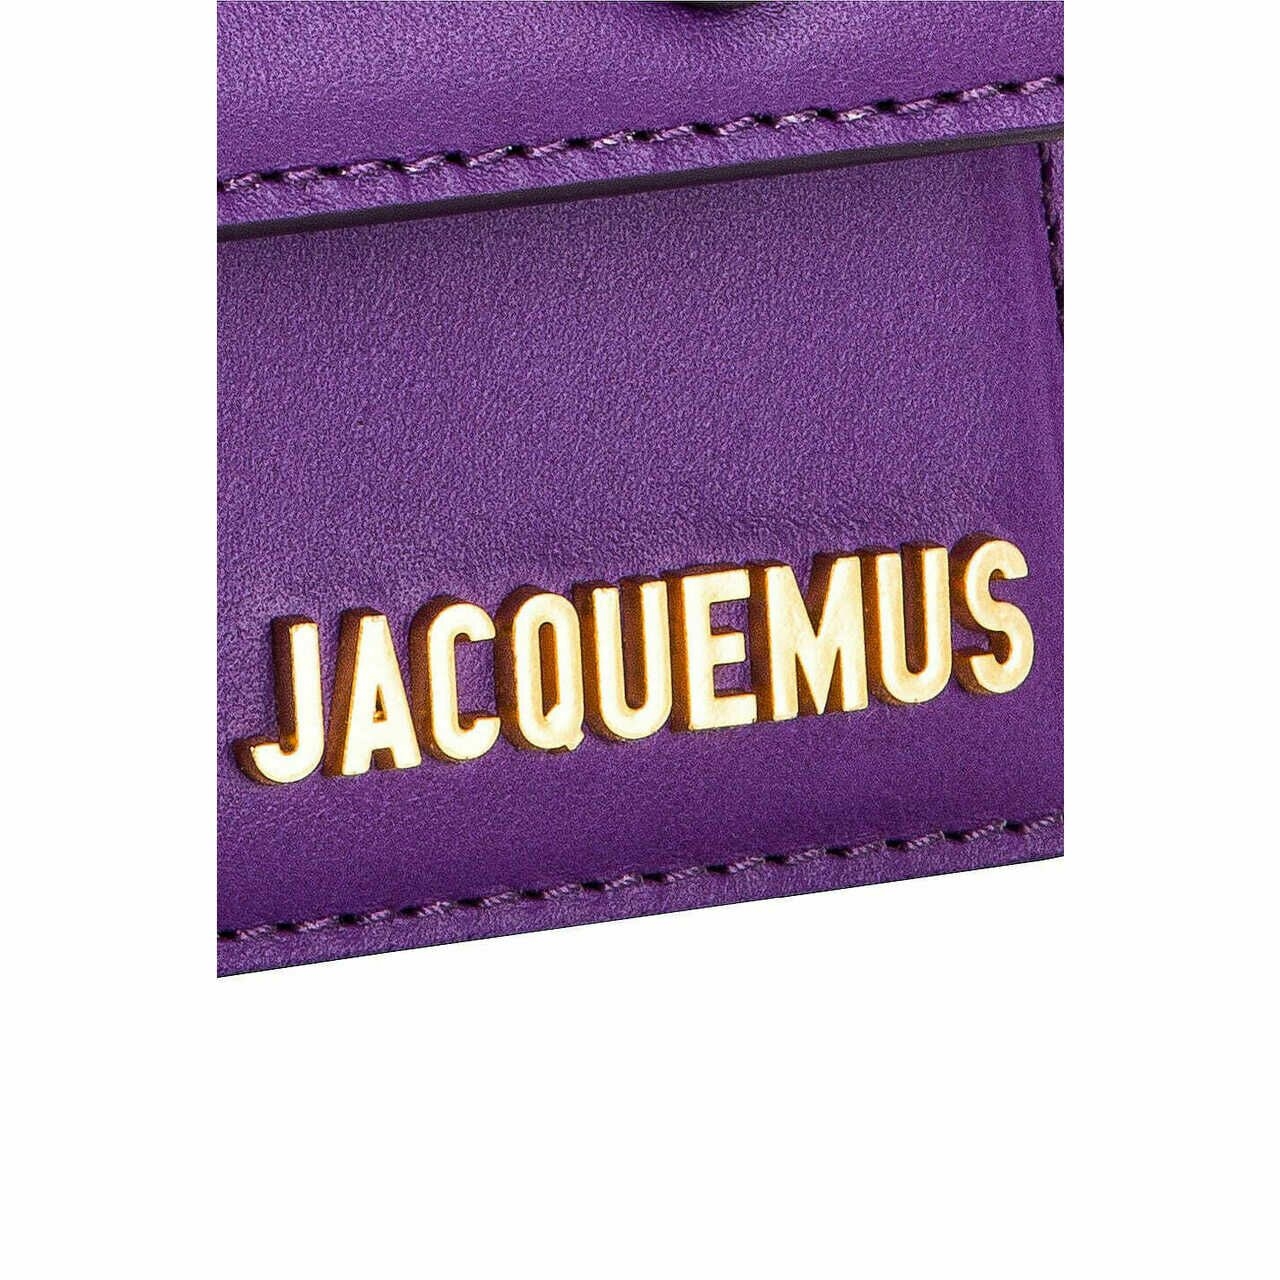 JACQUEMUS Purple Shoulder Bag